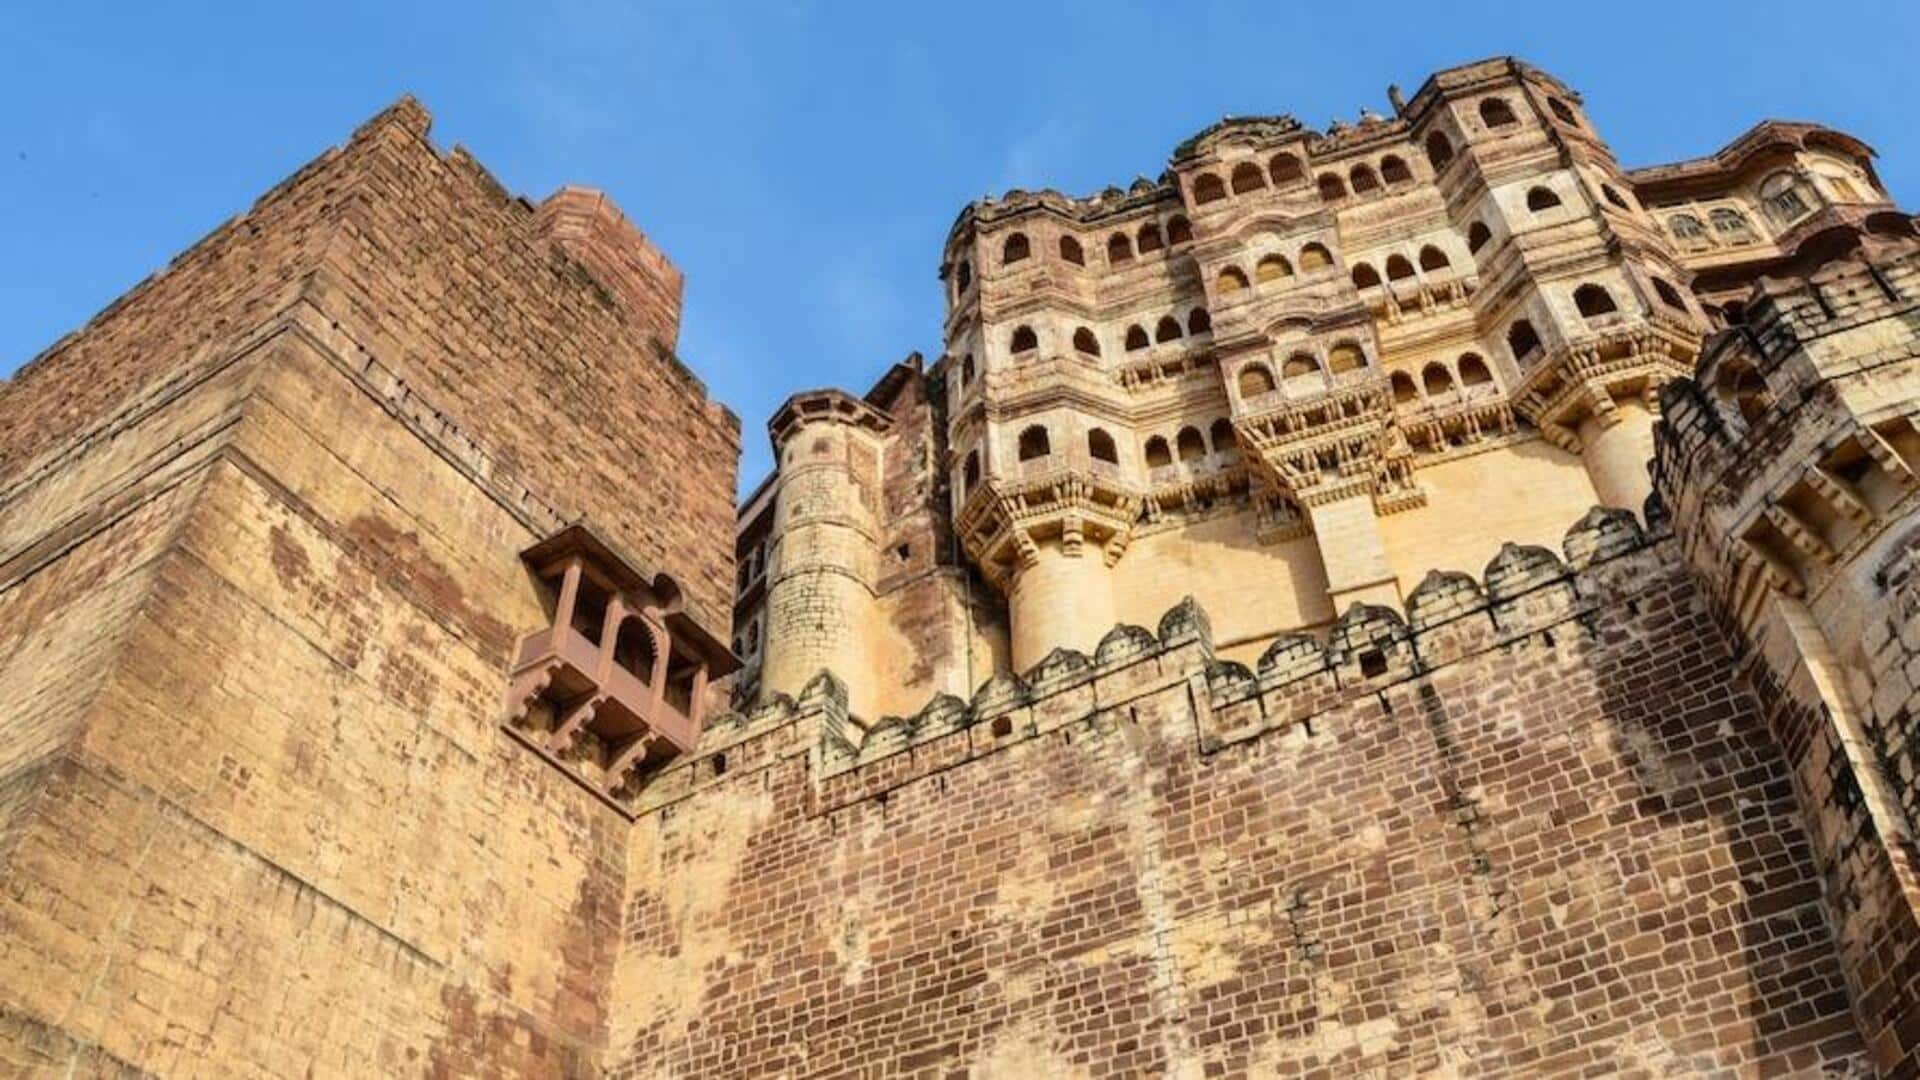 राजस्थान: अलवर के ये 5 पर्यटन स्थल हैं प्रसिद्ध, एक बार जरूर करें इनका रुख